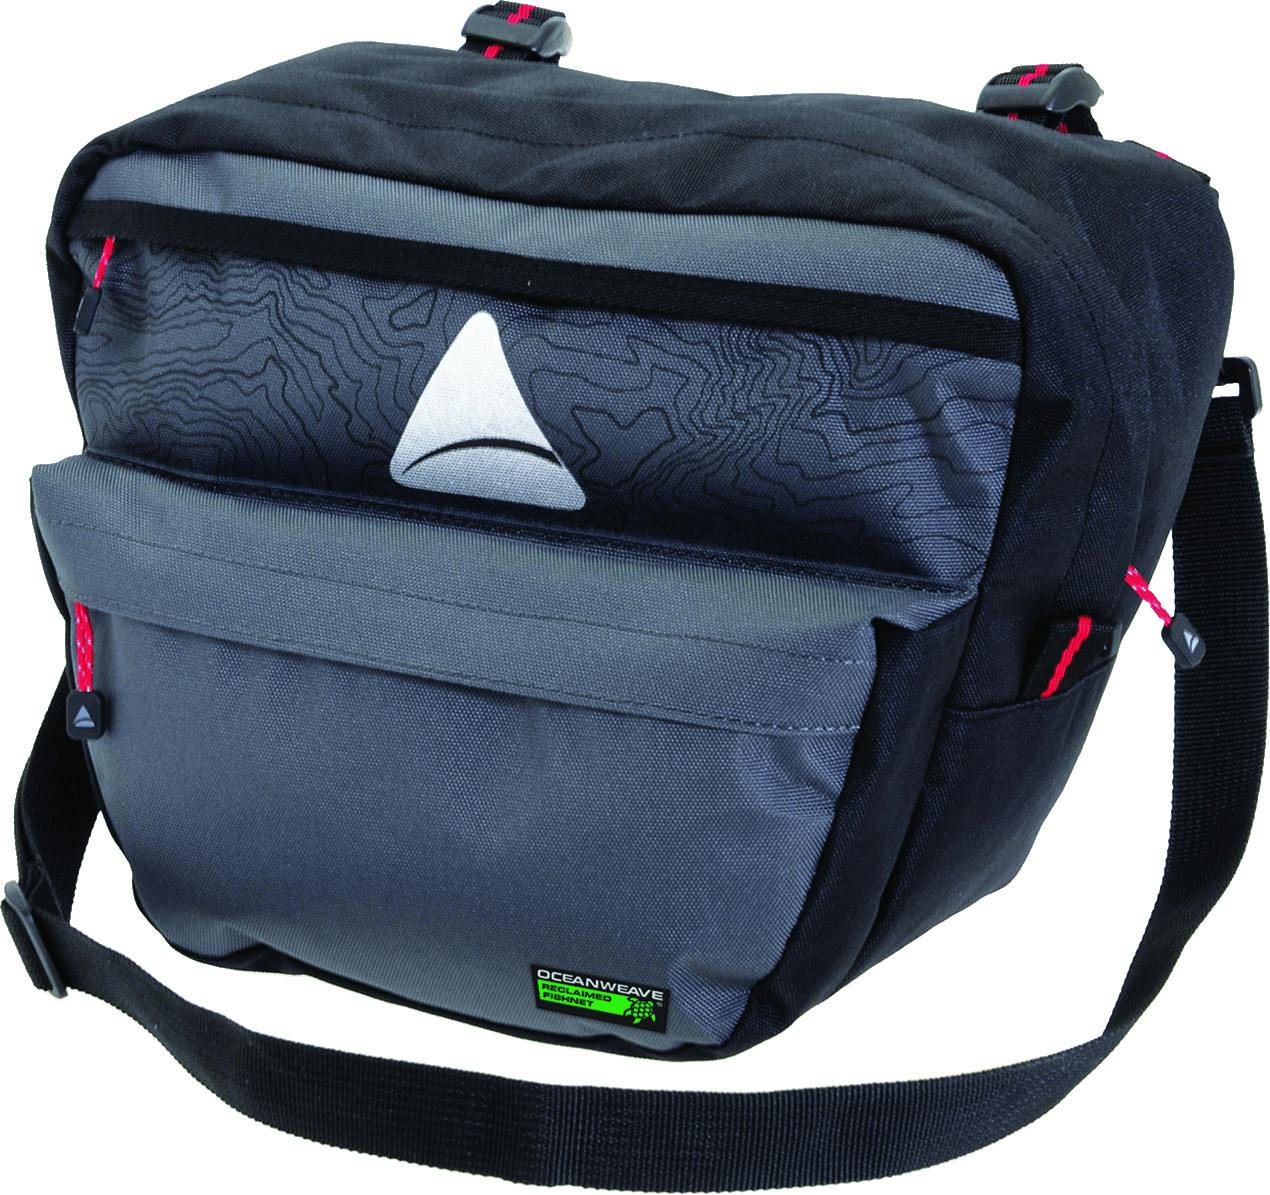 Seymour Oceanweave P7 Handlebar Bag Grey/Black